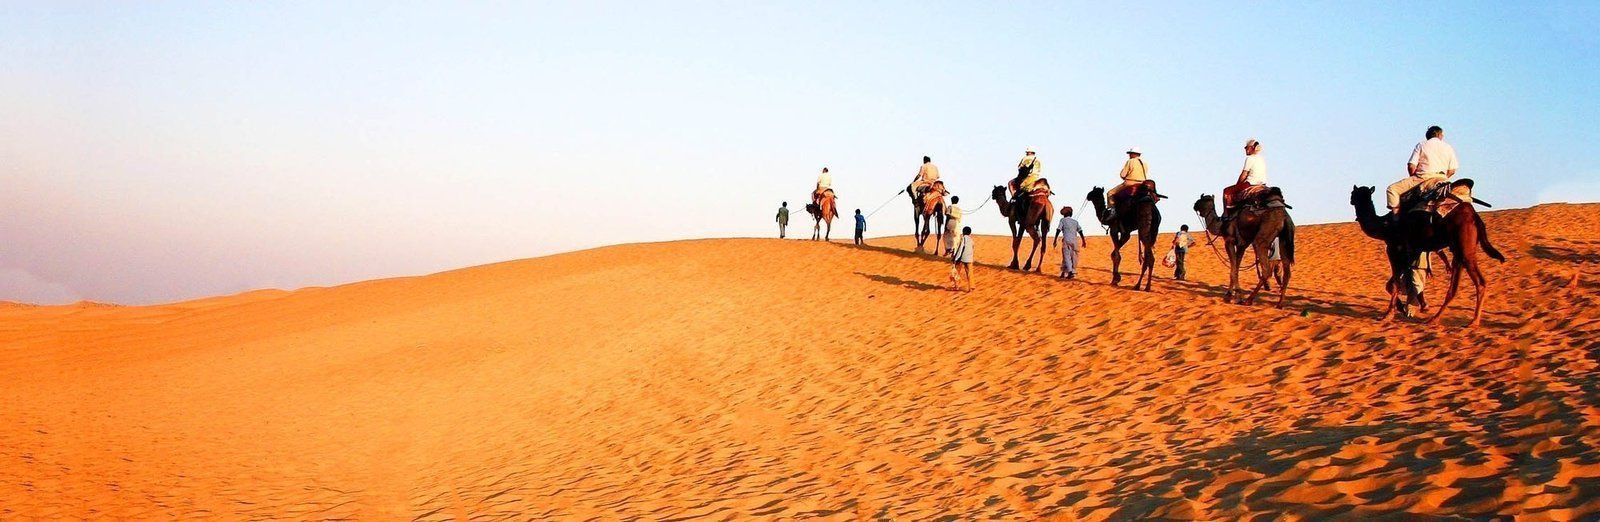 Voyageons dans le désert du Thar et la ville de Jaisalmer en Inde
